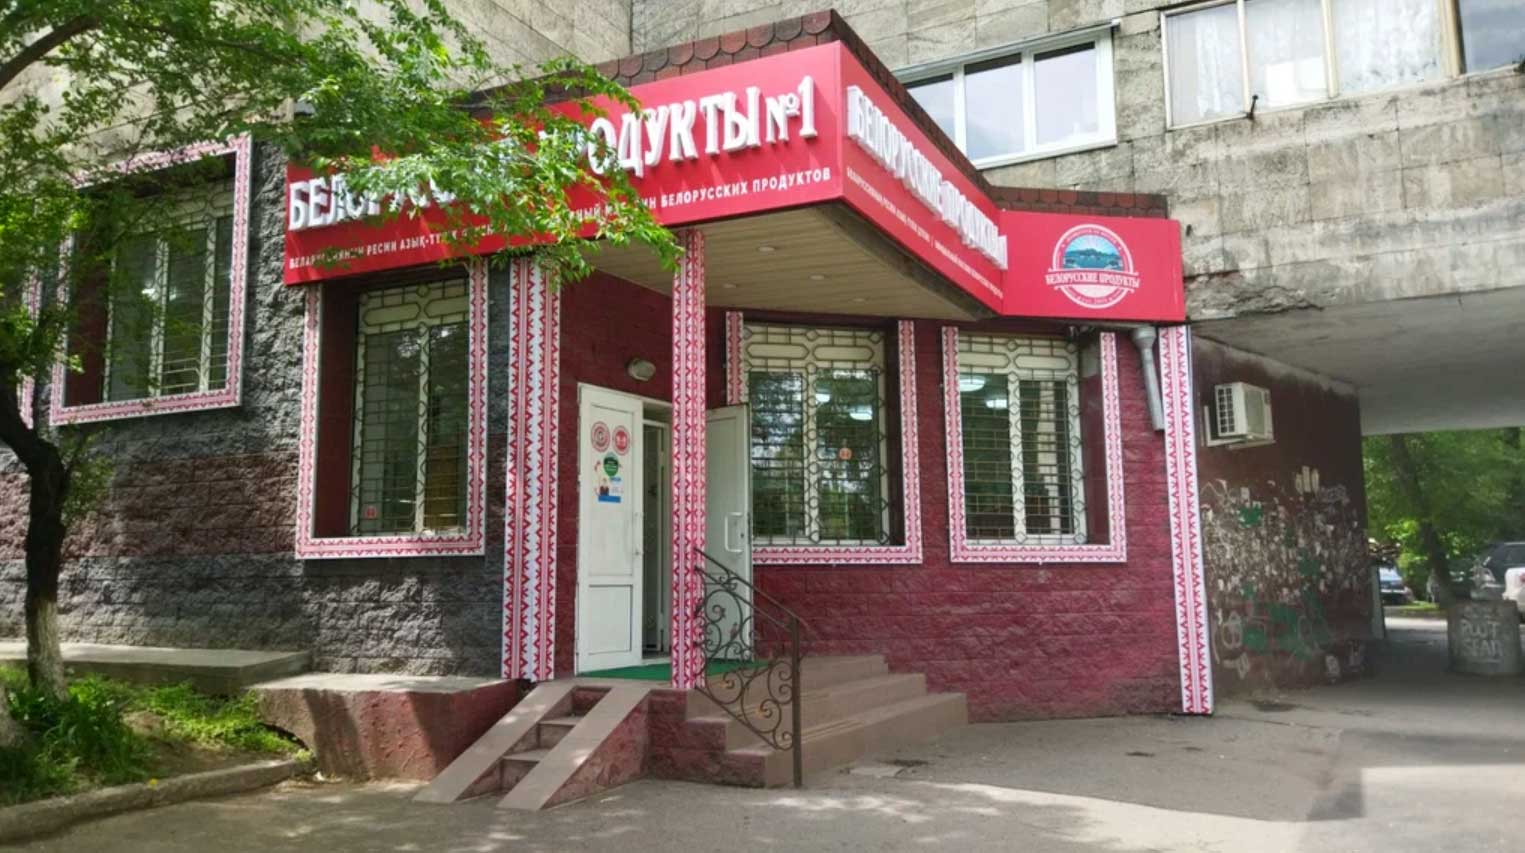 Магазин Белорусские продукты в Алматы, в Орбите-4, что здесь было во времена СССР